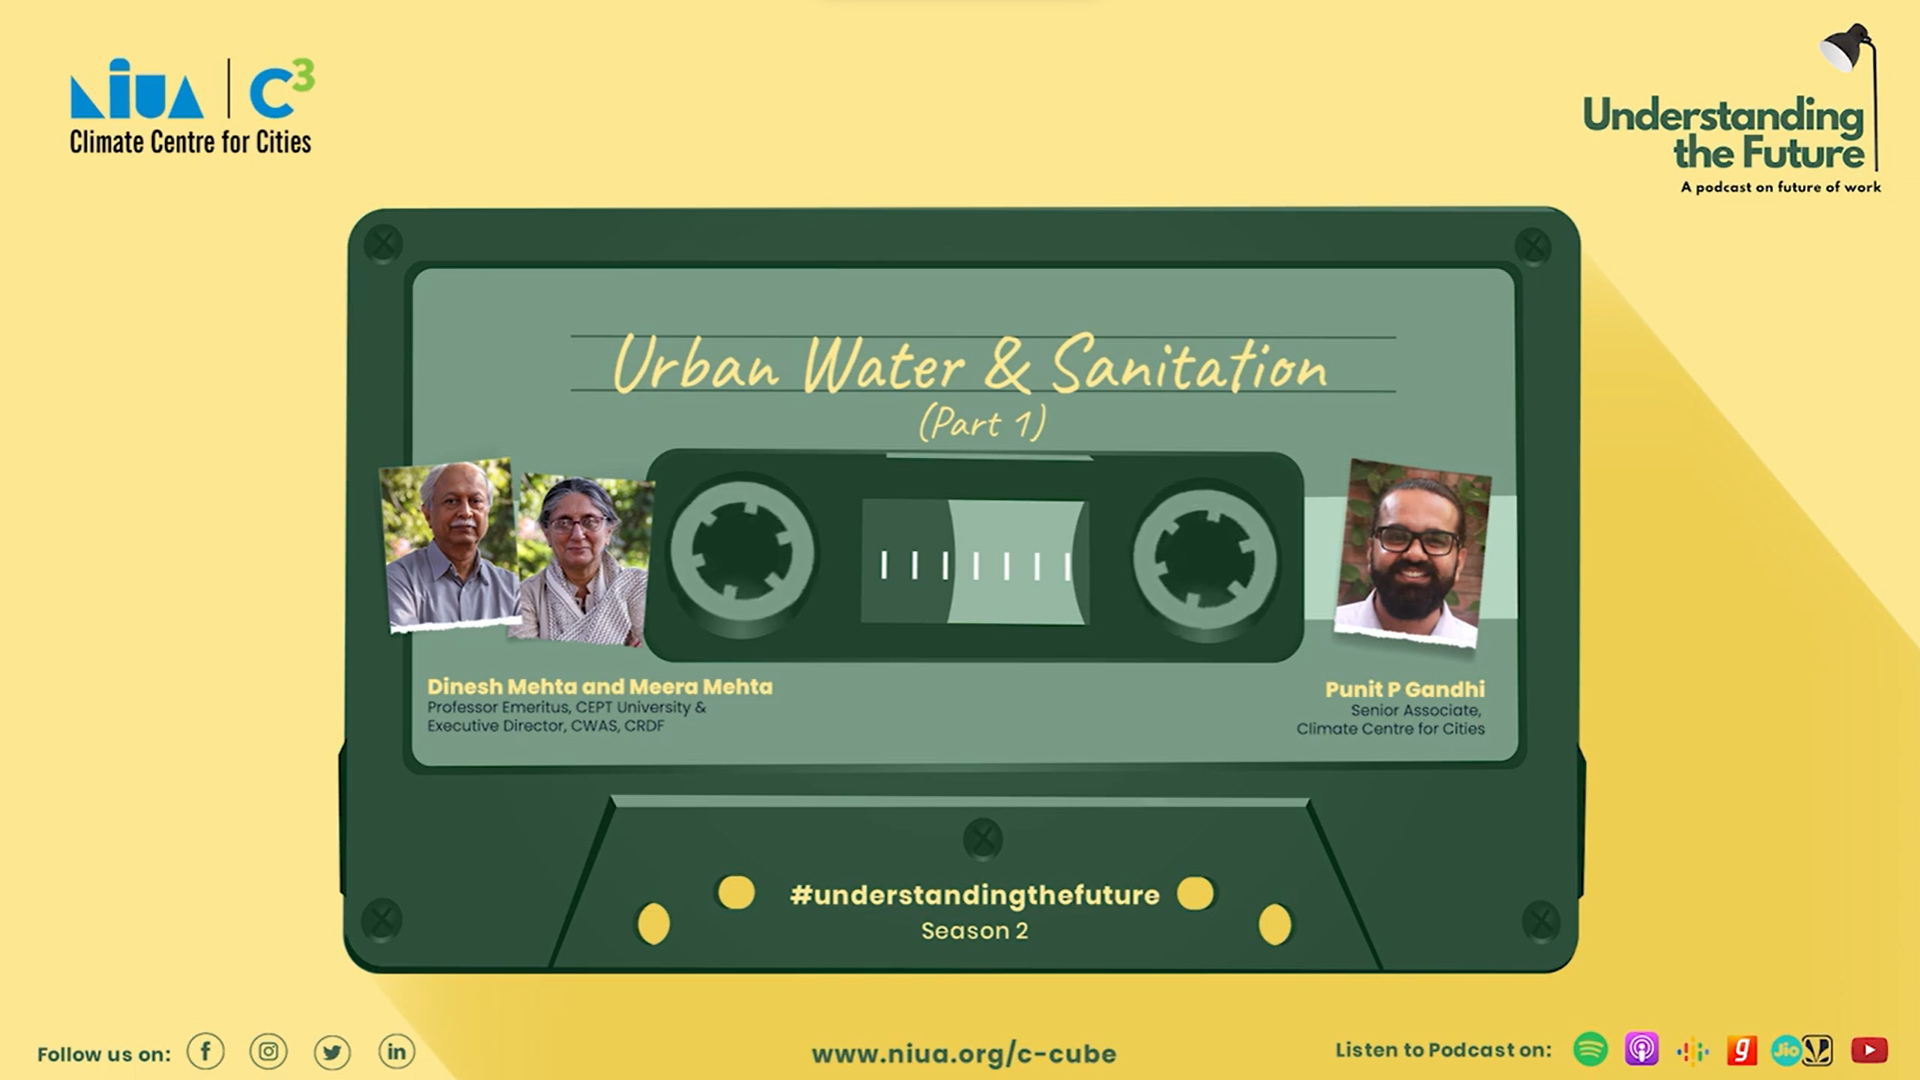 Urban Water & Sanitation